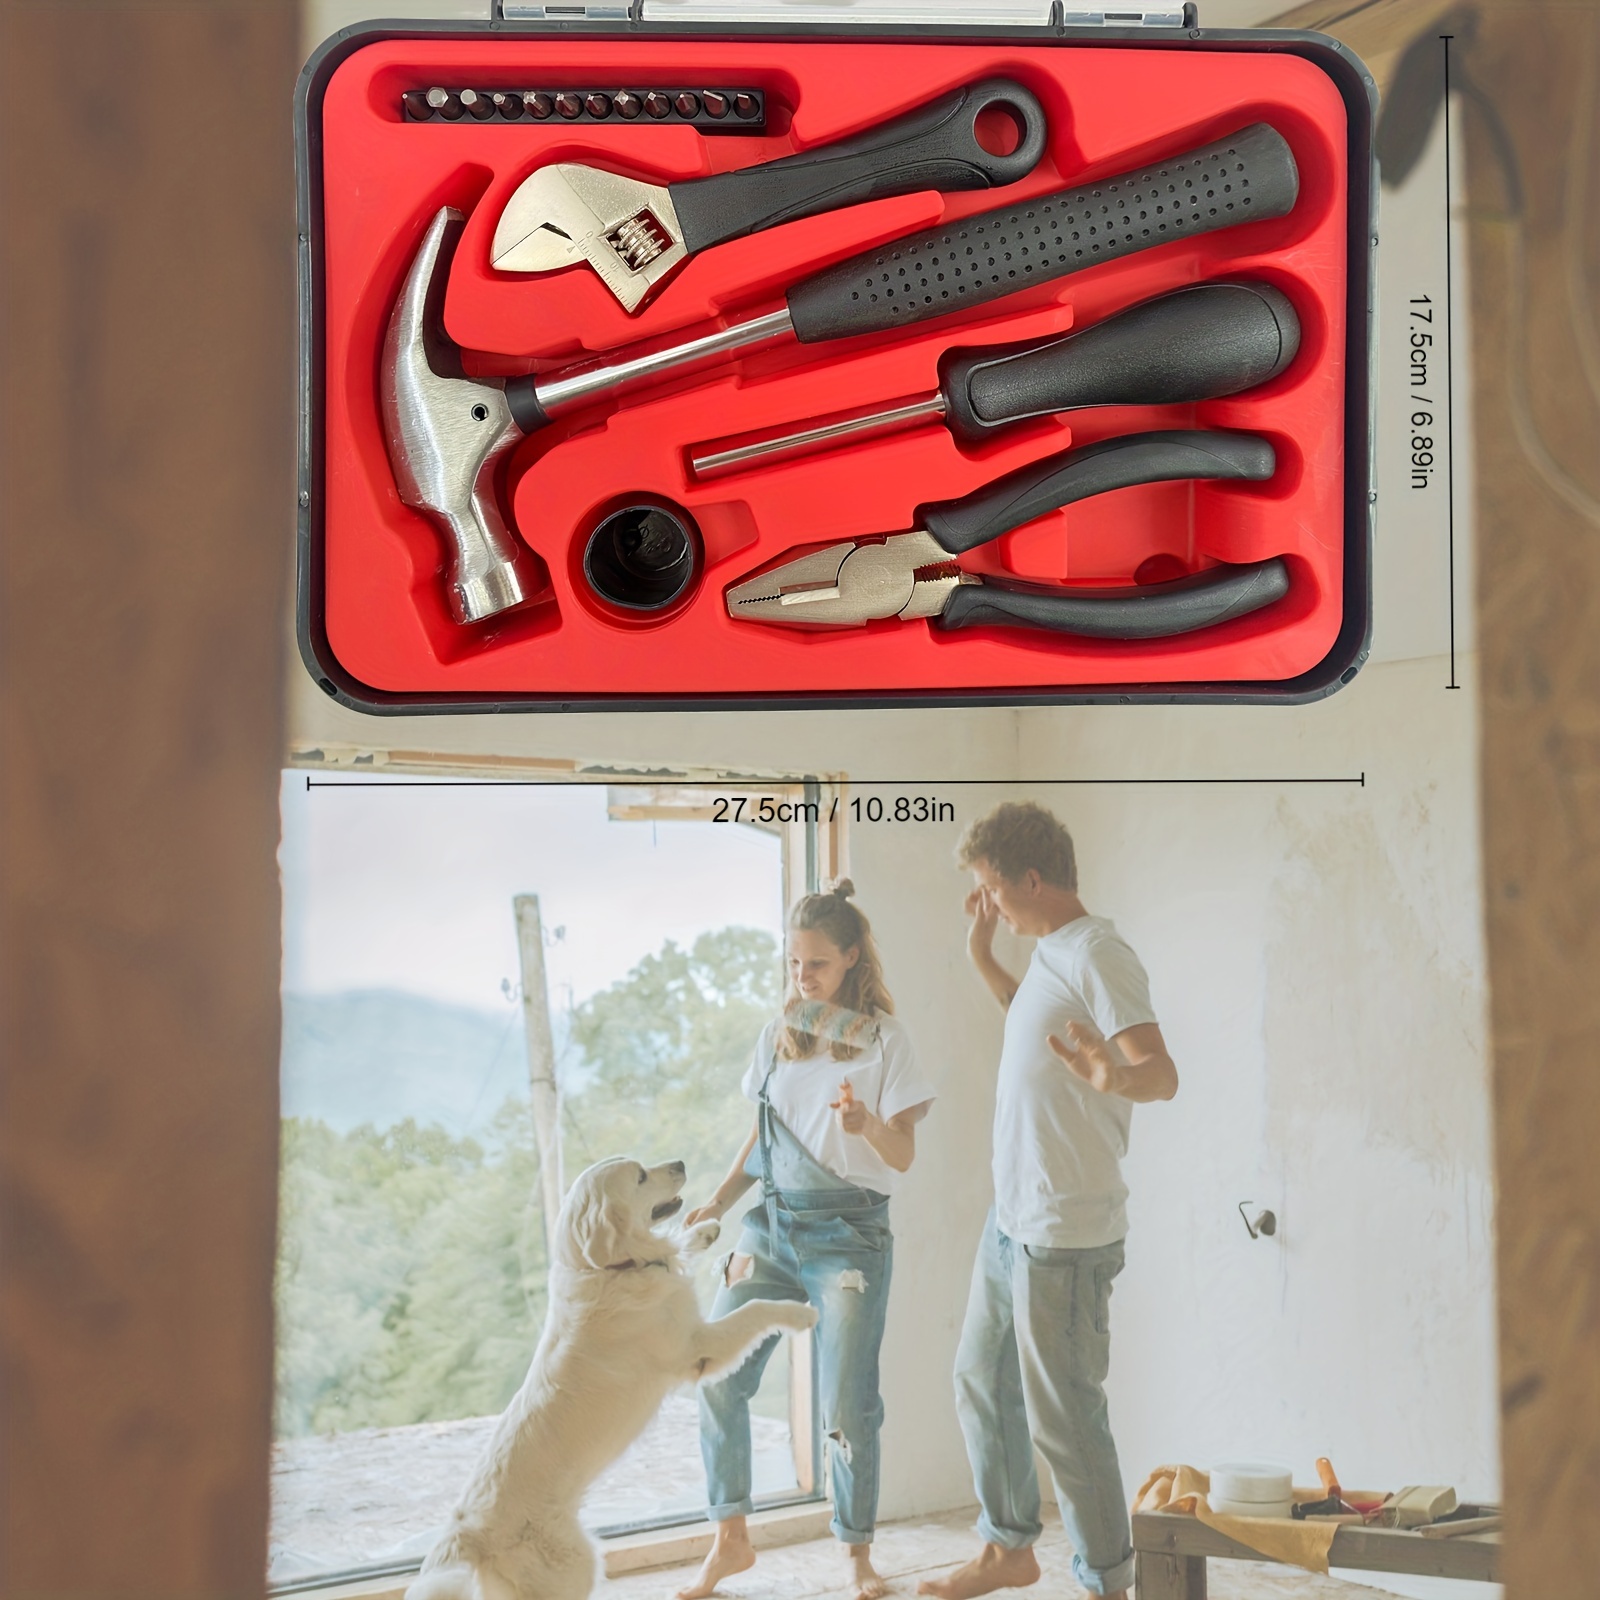 FIXA 17-piece tool kit - IKEA